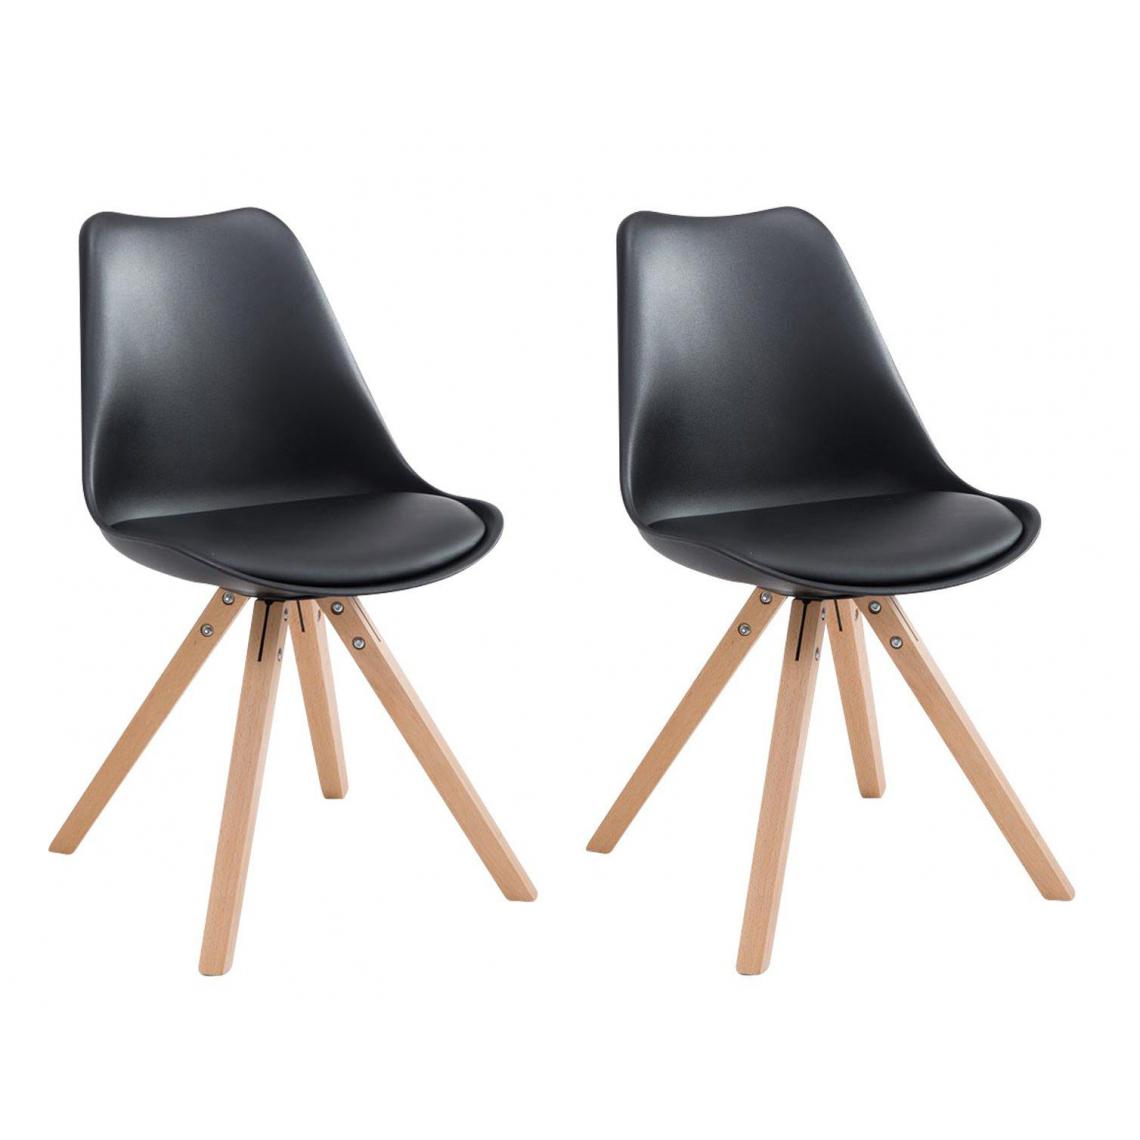 Decoshop26 - Lot de 2 chaises de salle à manger scandinave simili-cuir noir pieds bois CDS10020 - Chaises